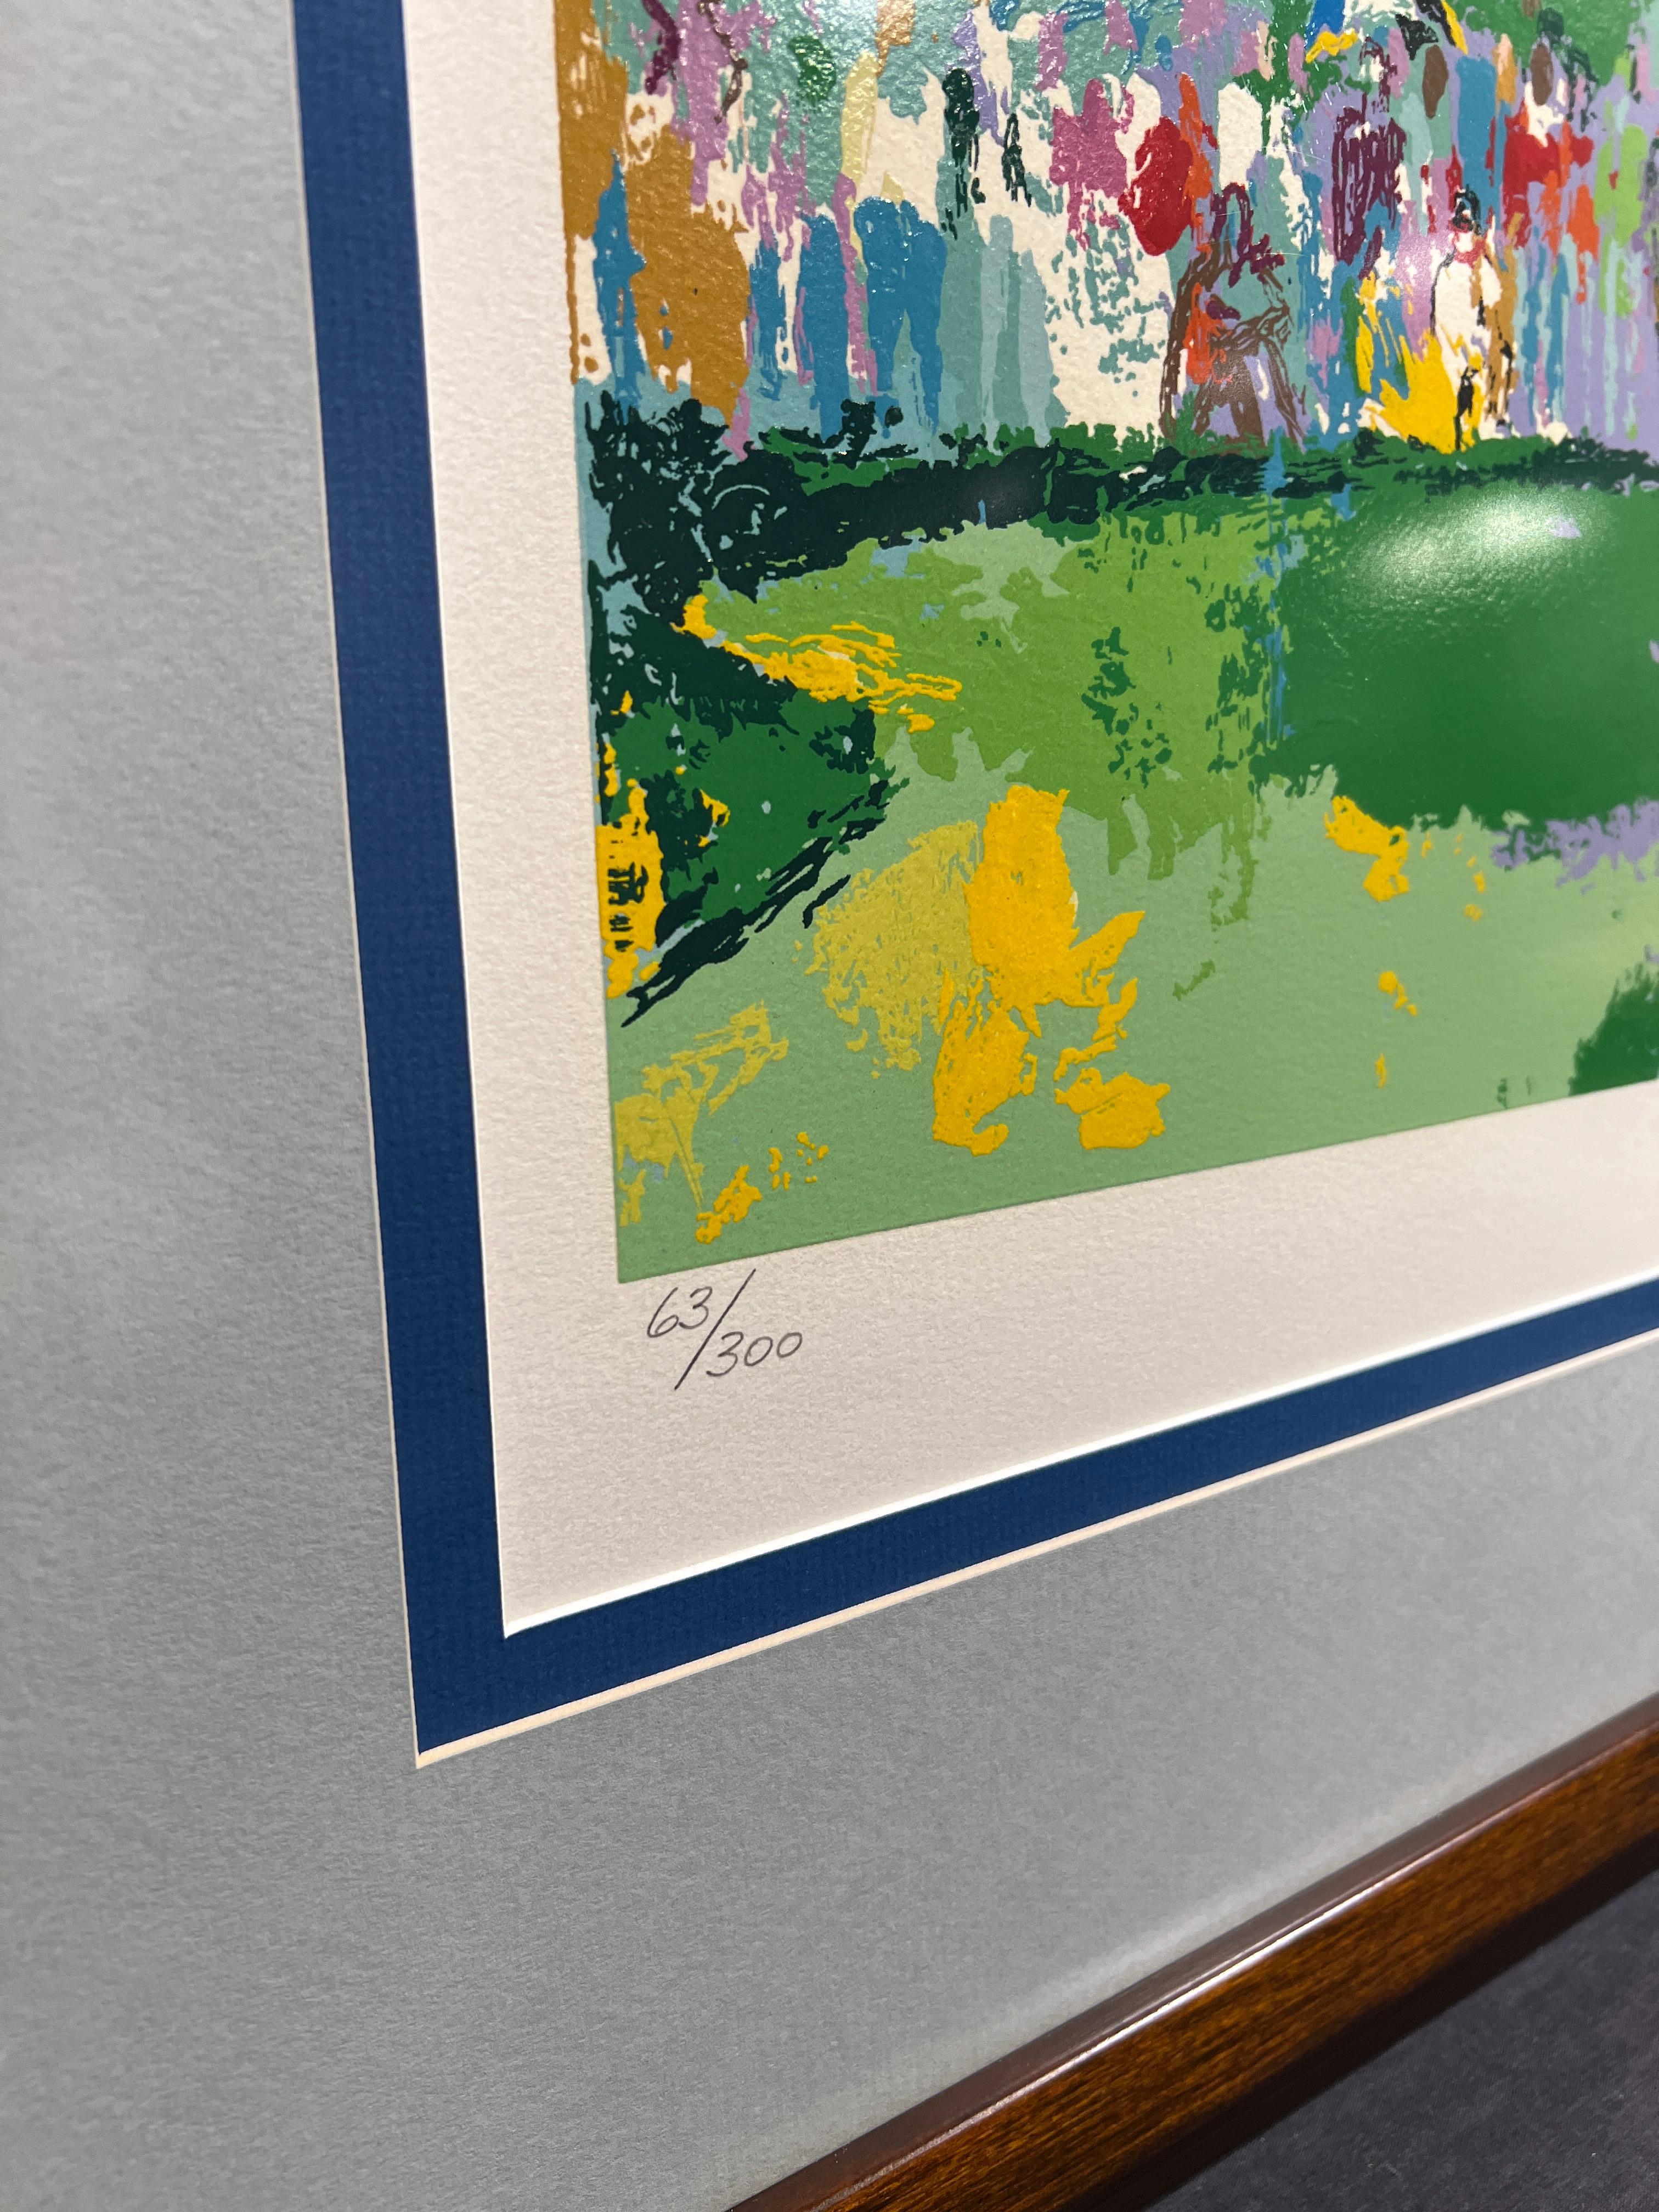 U.S. Offenbar in Oakmont
LeRoy Neiman (Amerikaner, 1921-2012)
Signiert mit Bleistift unten rechts
Ausgabe 63/300 unten links
27,5 x 39 Zoll
39,25 x 51 Zoll mit Rahmen

Bekannt für seine leuchtenden, farbenfrohen Gemälde und Siebdrucke berühmter